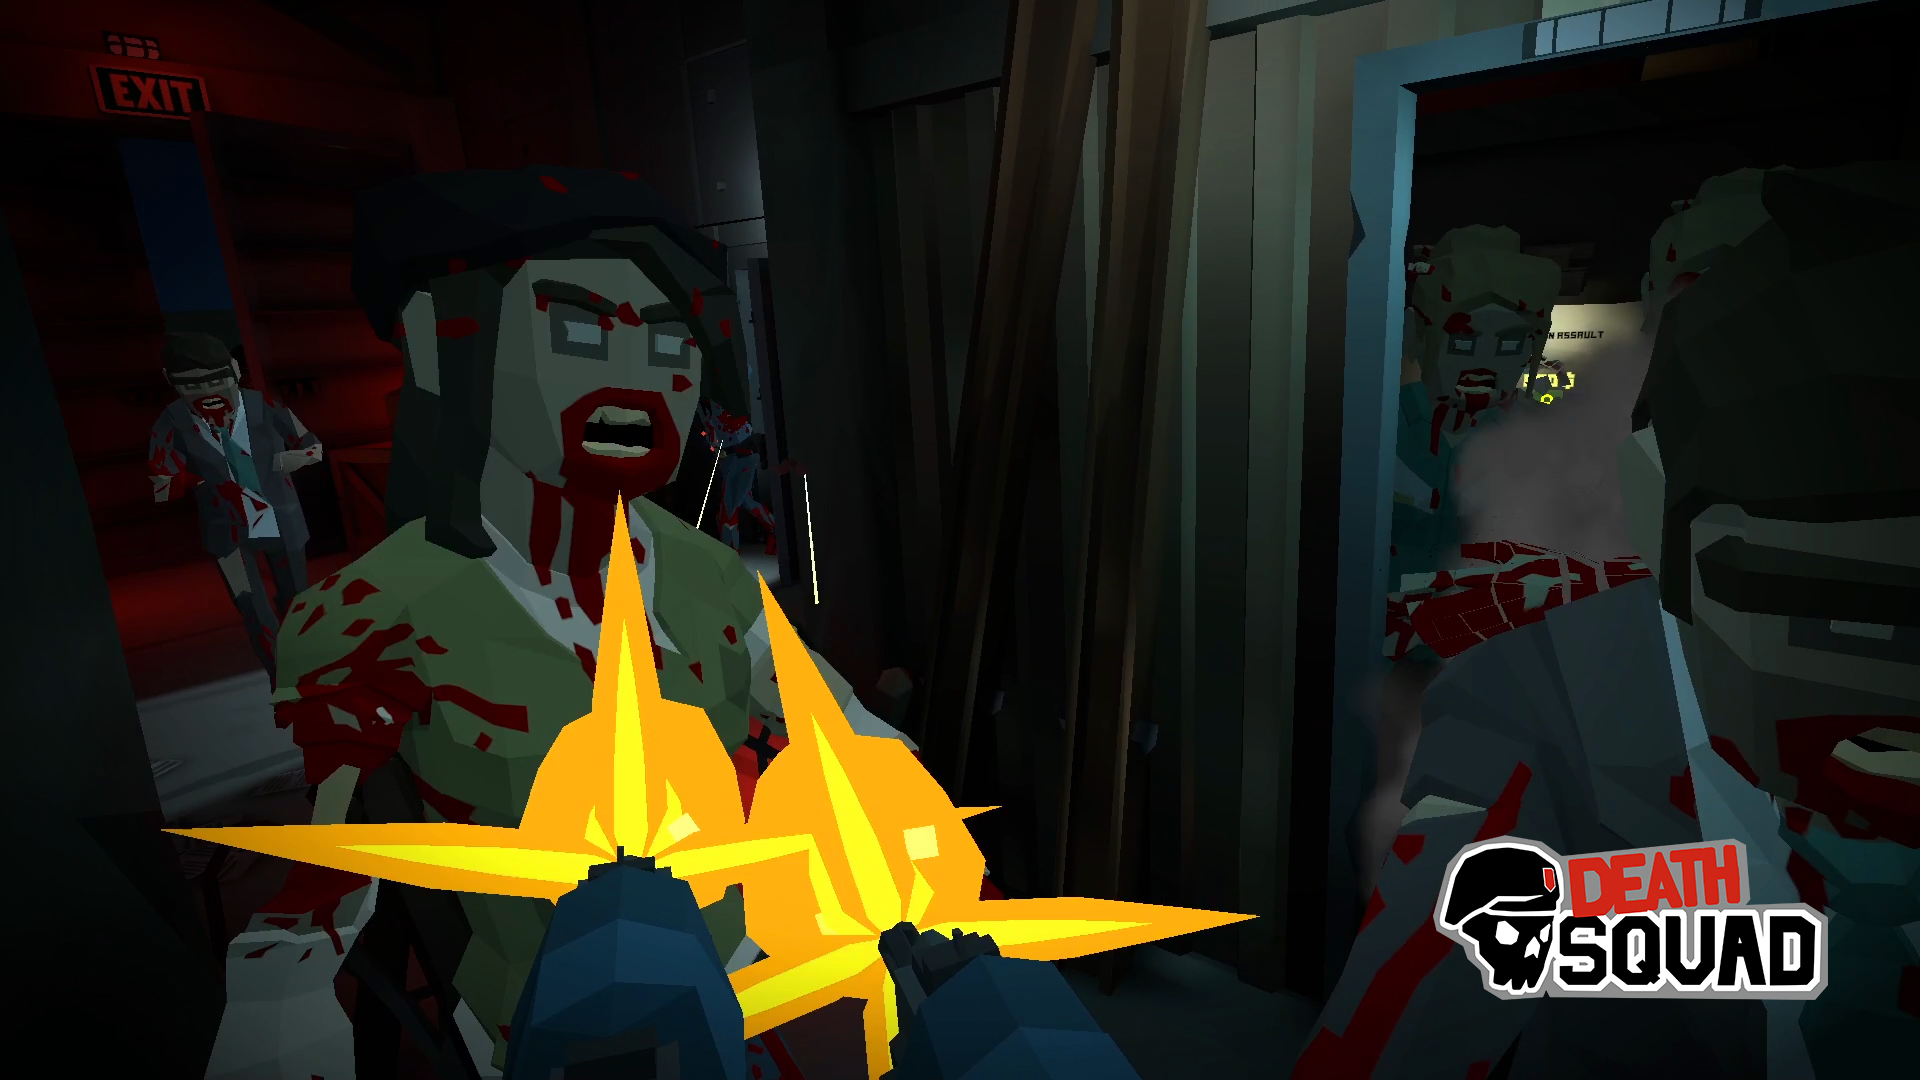 Mata zombis con tus amigos en realidad virtual, solo disponible en VEX Arena